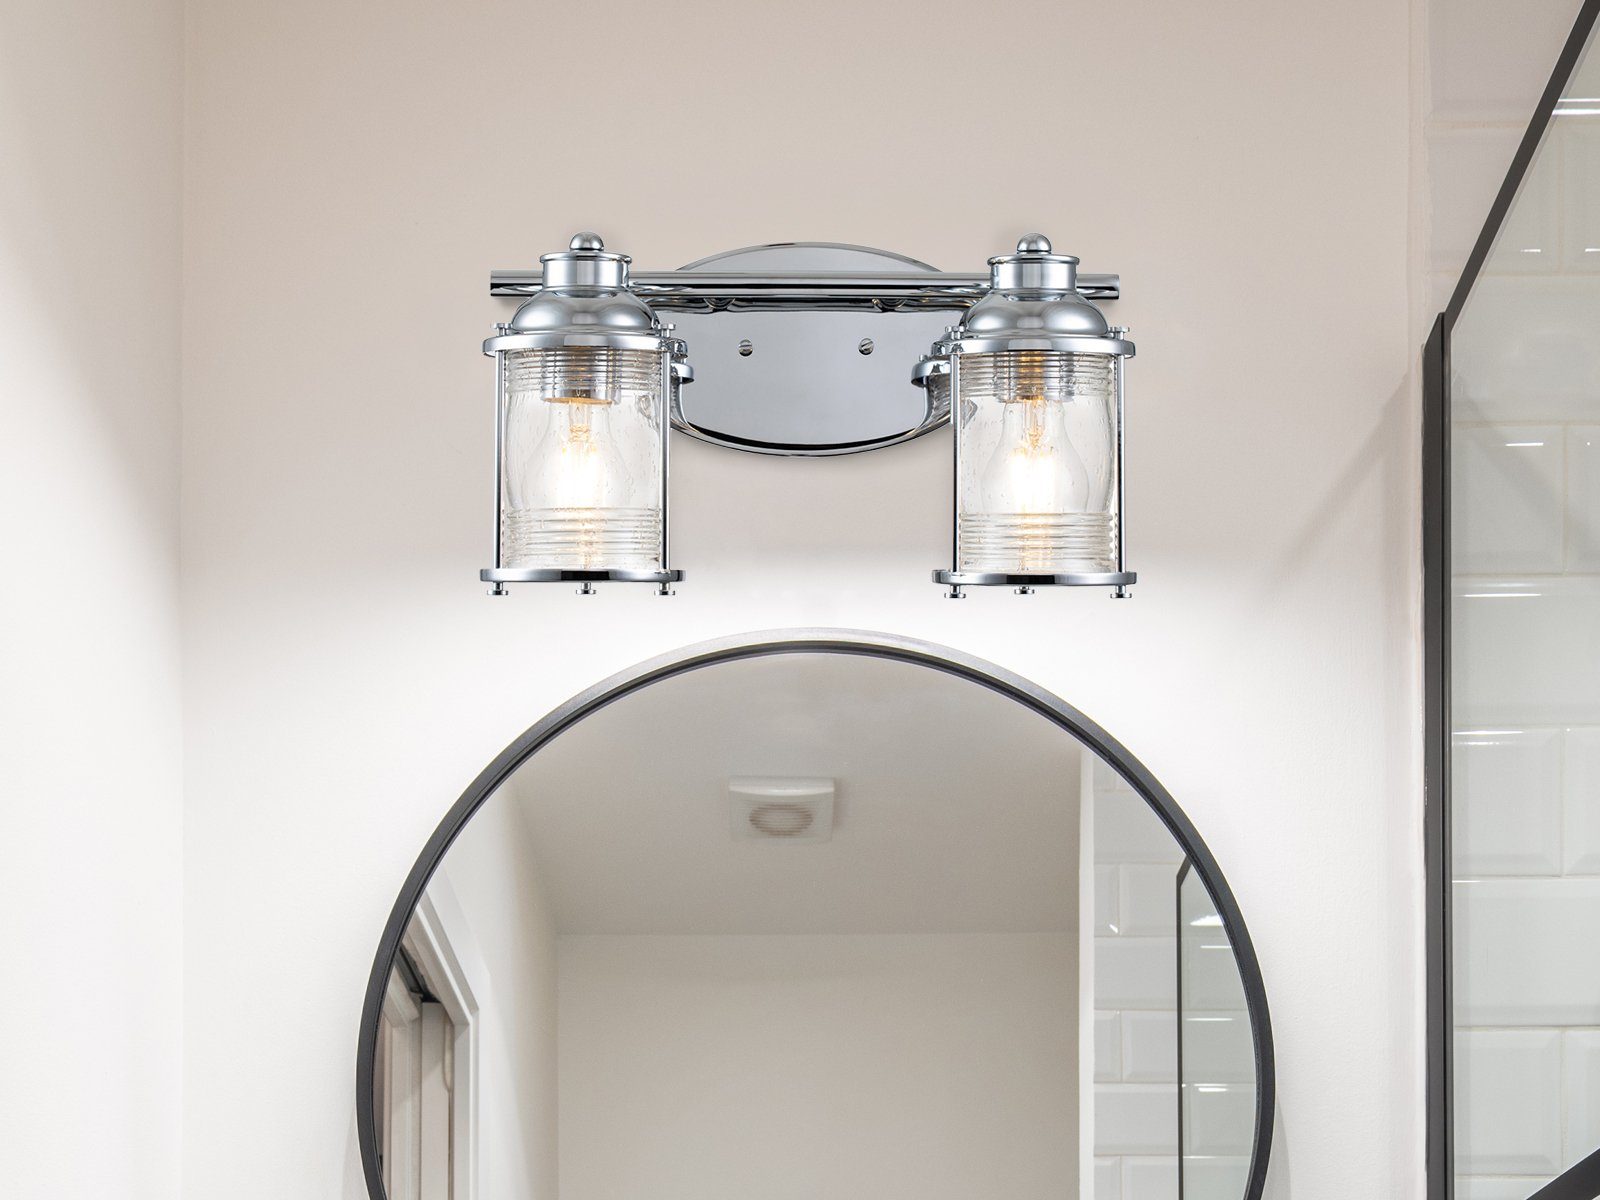 meineWunschleuchte LED Wandleuchte, warmweiß, innen für Bad & Wohnraum,  Badezimmerlampe Wand Bad-lampe Spiegel-Leuchte, Designerlampen Chrom Breite  36cm